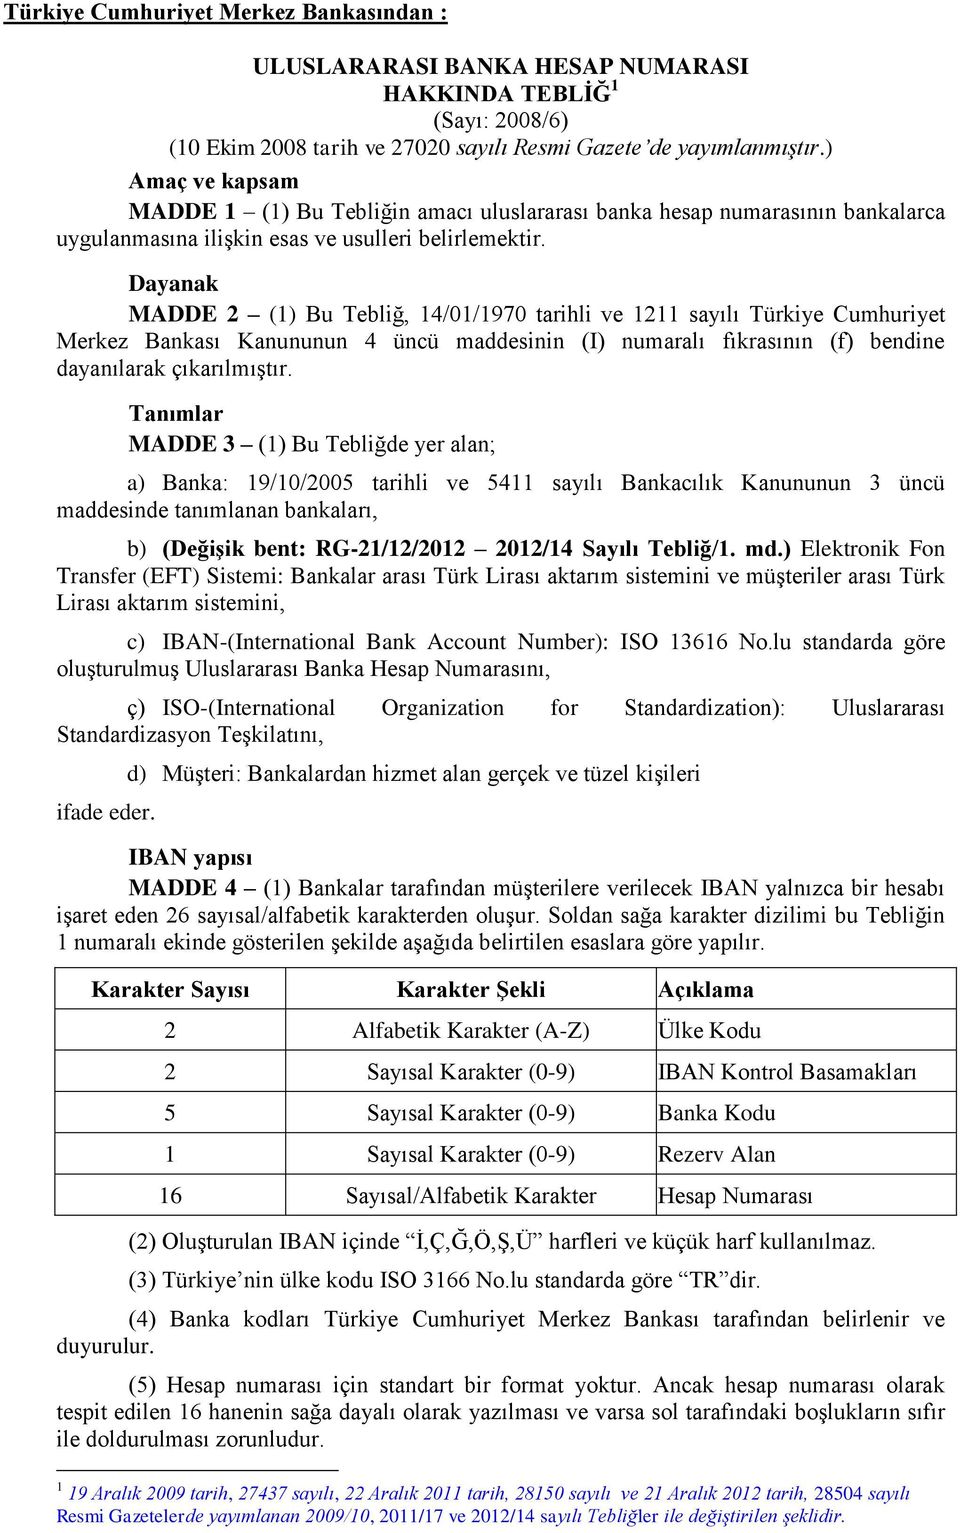 Dayanak MADDE 2 (1) Bu Tebliğ, 14/01/1970 tarihli ve 1211 sayılı Türkiye Cumhuriyet Merkez Bankası Kanununun 4 üncü maddesinin (I) numaralı fıkrasının (f) bendine dayanılarak çıkarılmıştır.